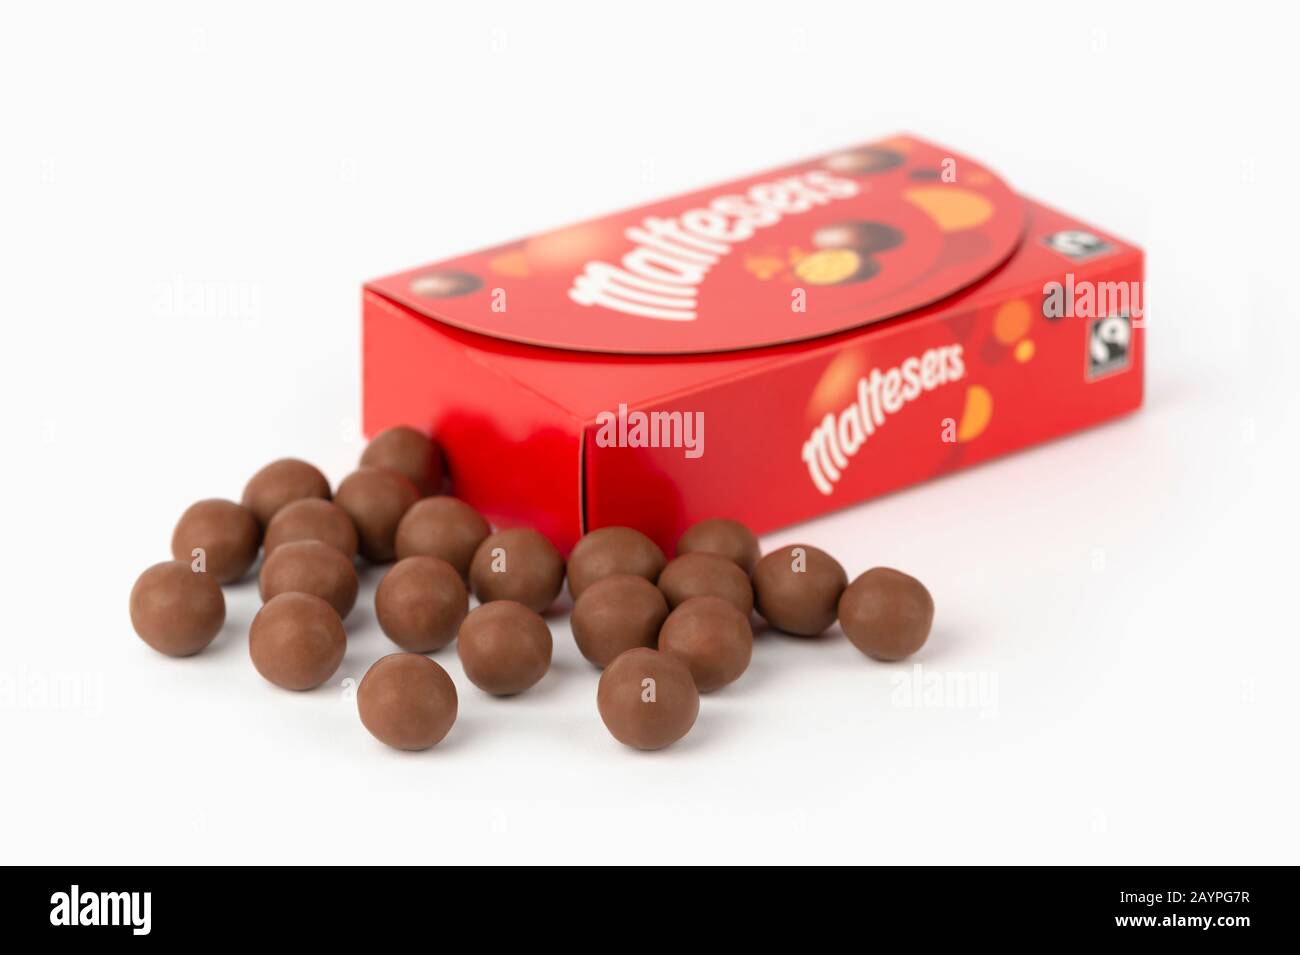 Algunos chocolates Maltesers se rodaron sobre un fondo blanco junto con el embalaje de la caja del producto. Foto de stock